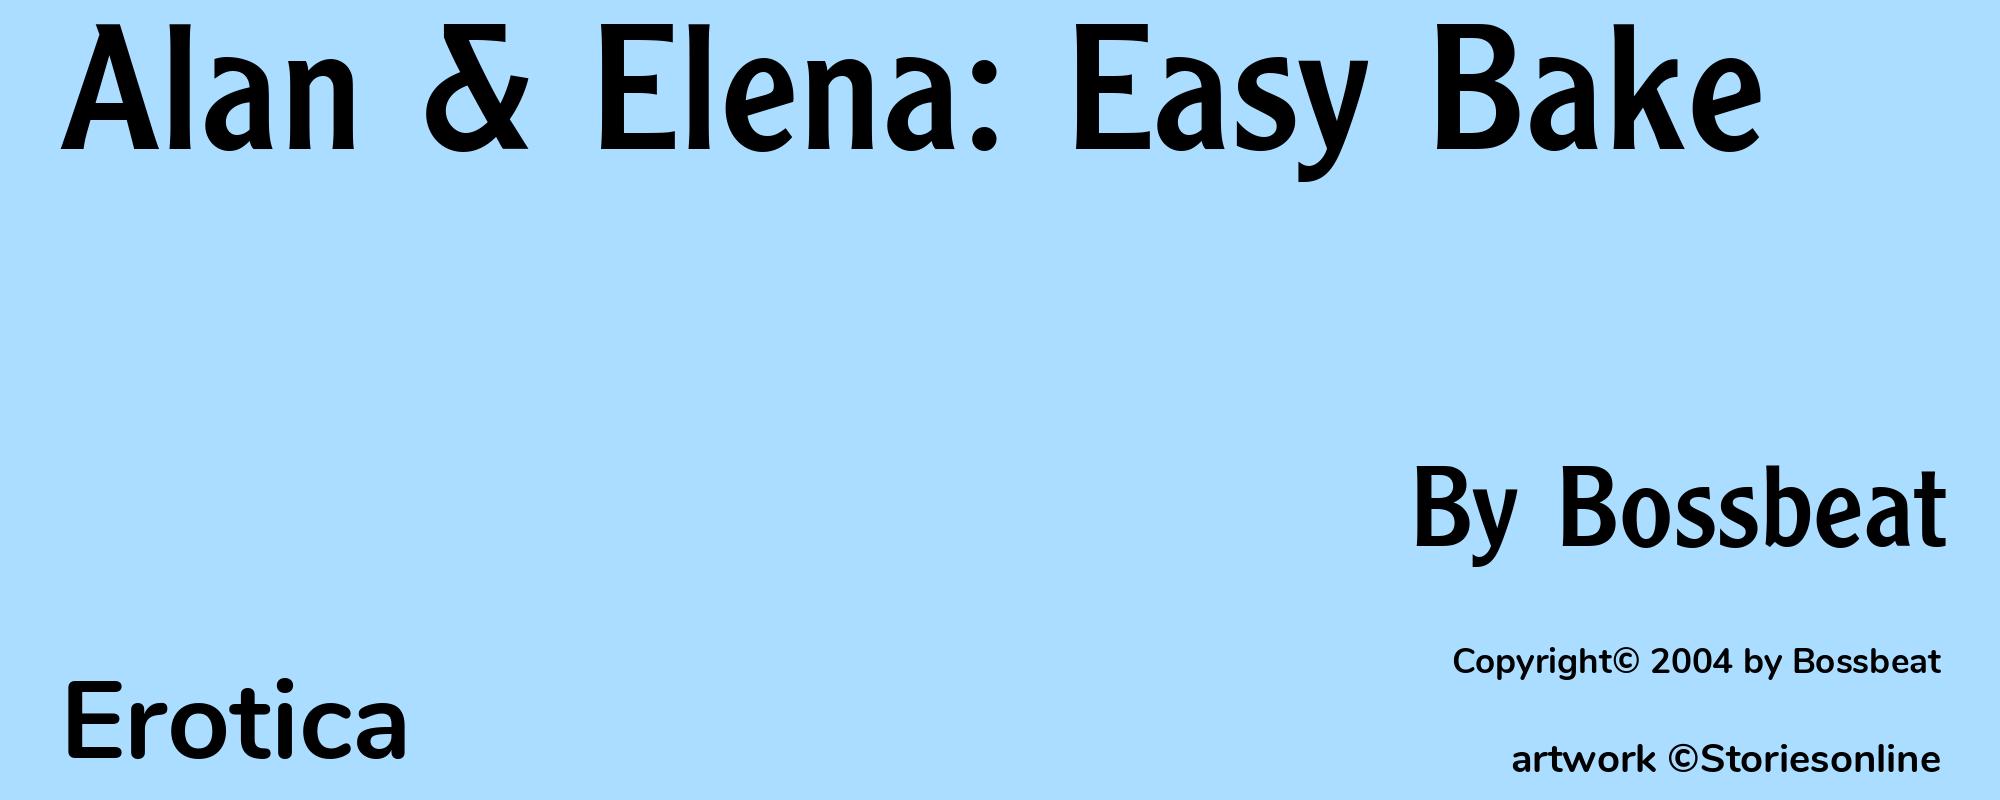 Alan & Elena: Easy Bake - Cover